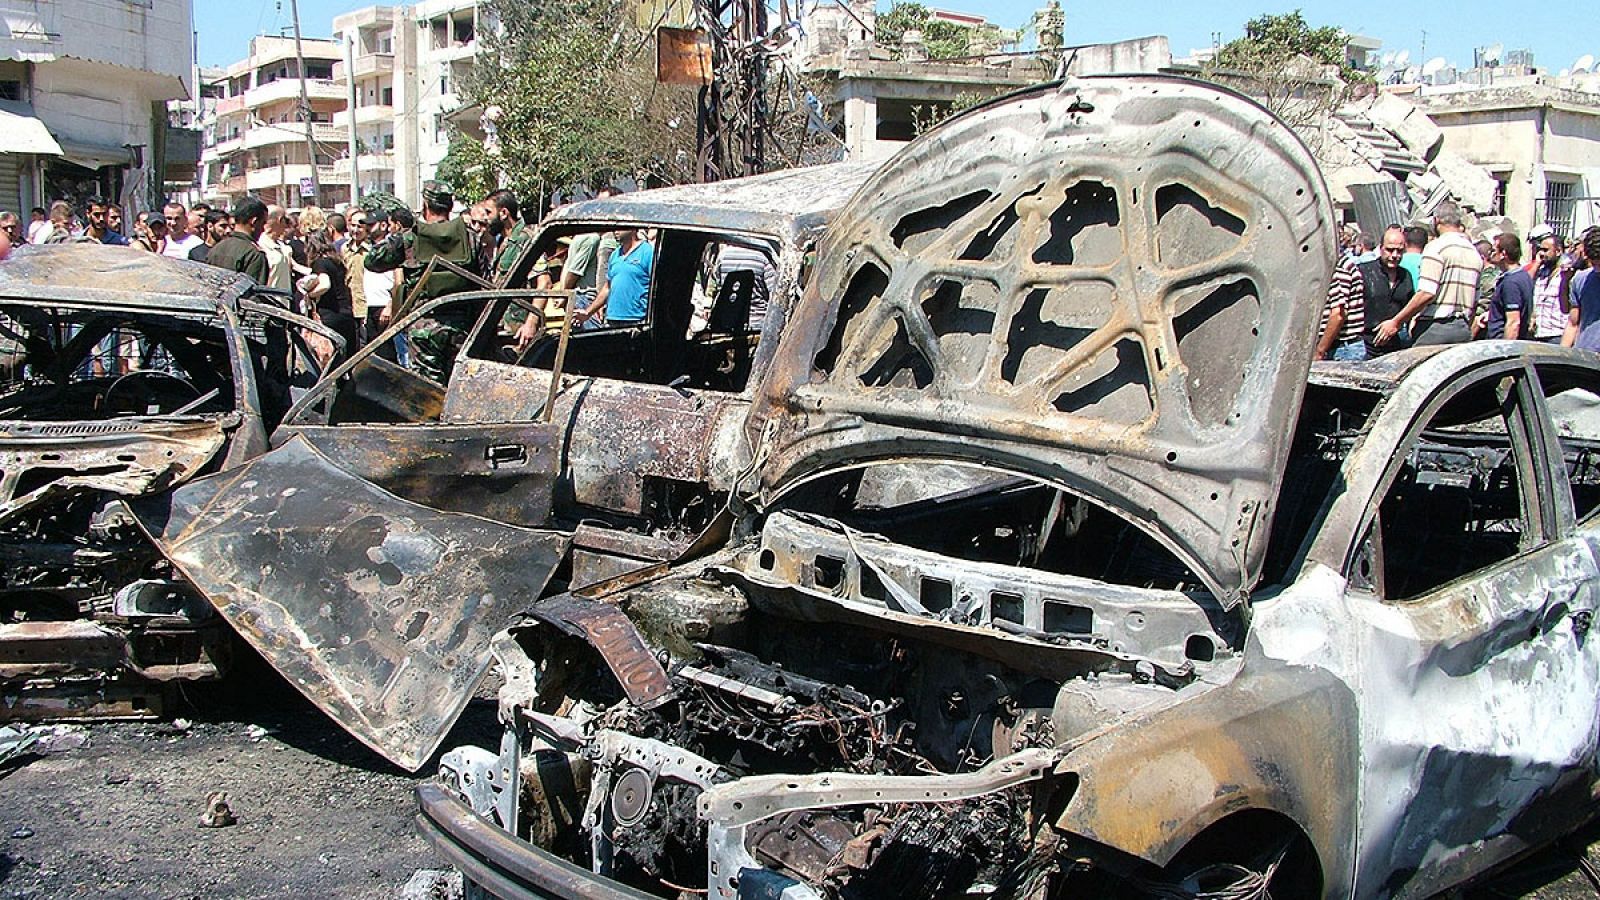 Imágenes de la agencia oficial siria SANA que muestran la destrucción en la ciudad de Latakia, en la costa mediterránea de Siria, tras un atentado con coche bomba